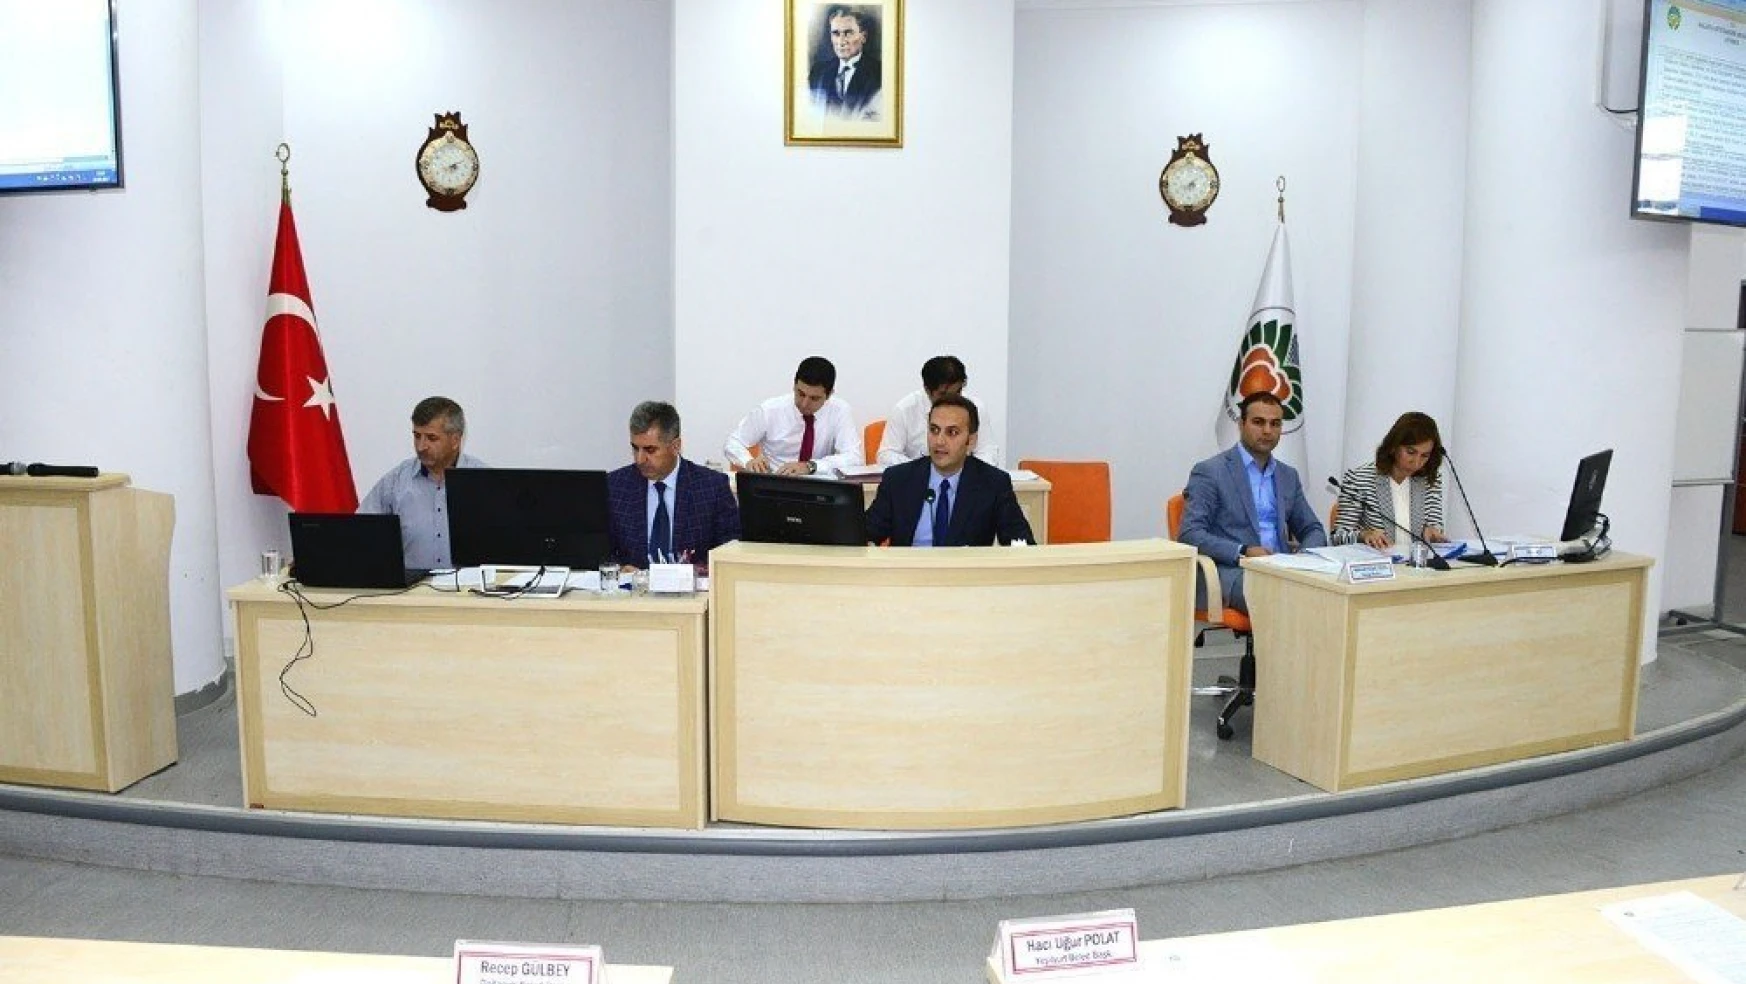 Büyükşehir Belediyesi Eylül ayı toplantısının 2. birleşimini yaptı
